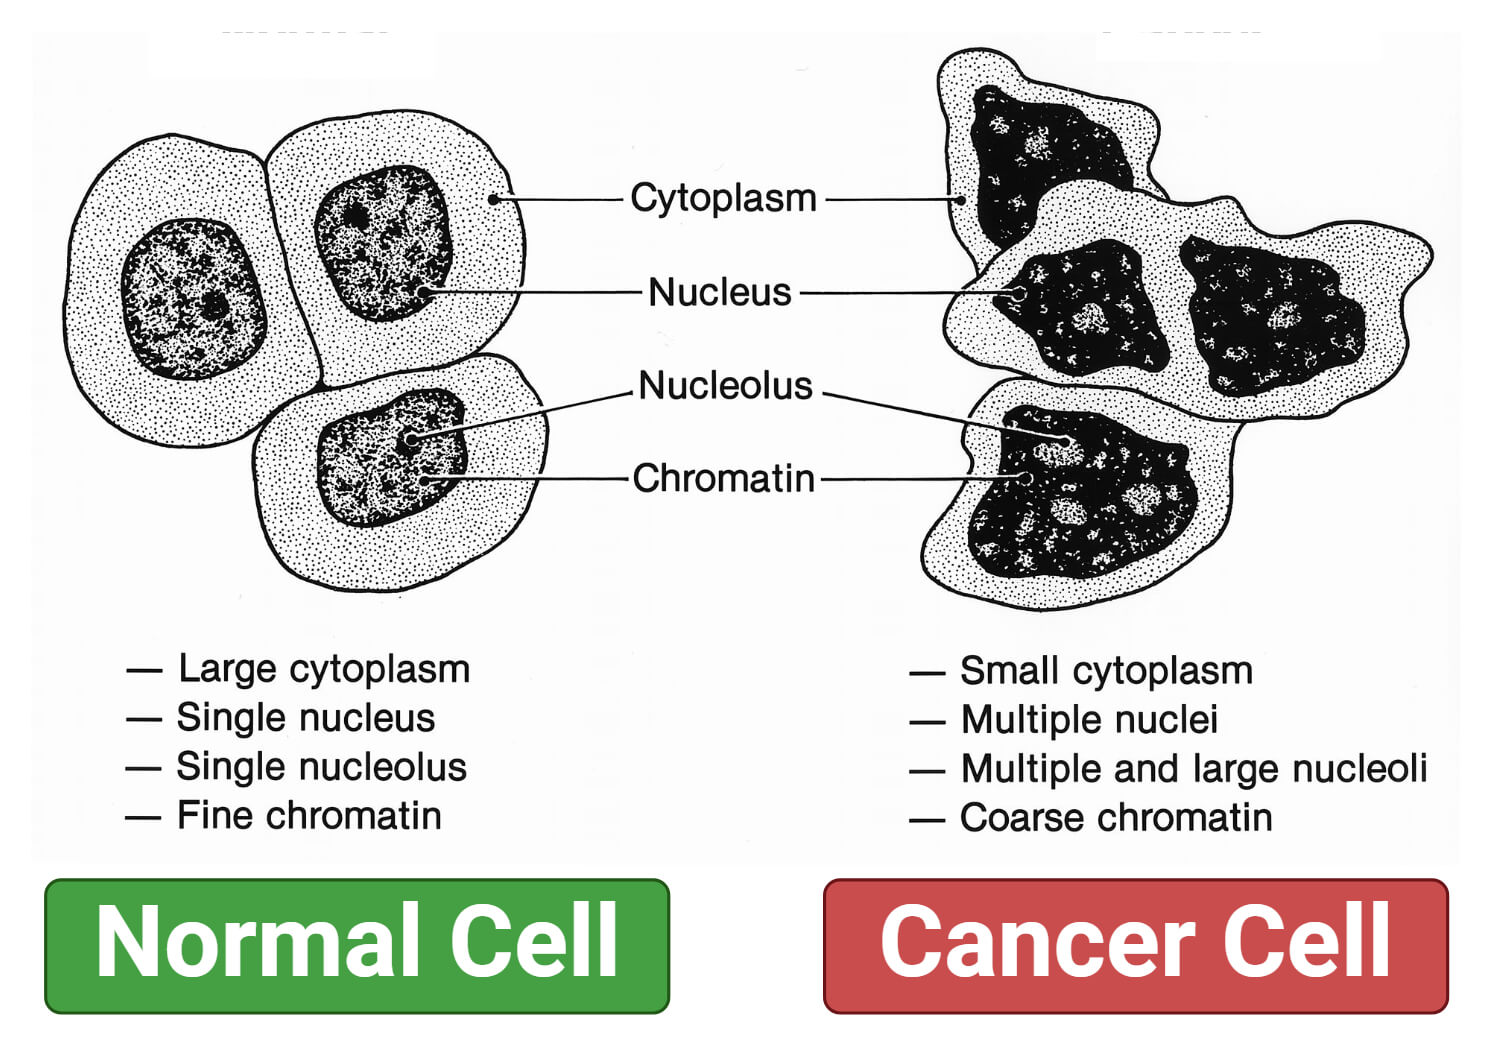 Morphology of Cancer Cells